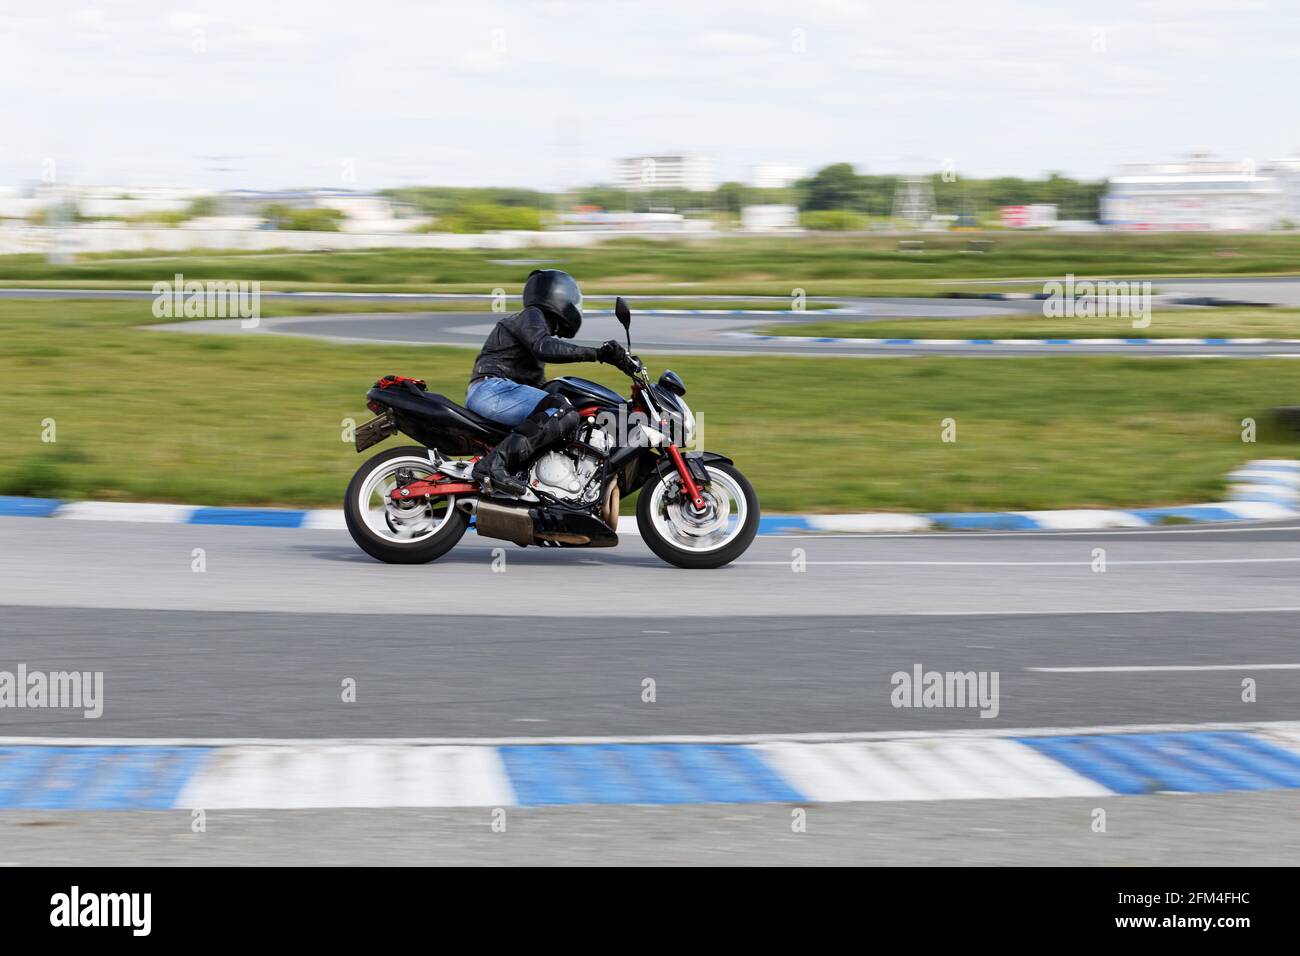 Uljanowsk, Russland - 10. Juni 2017. Ein Motorrad-Rennfahrer macht einen Übungslauf auf einer Sportstrecke. Bewegungsunschärfe. Stockfoto